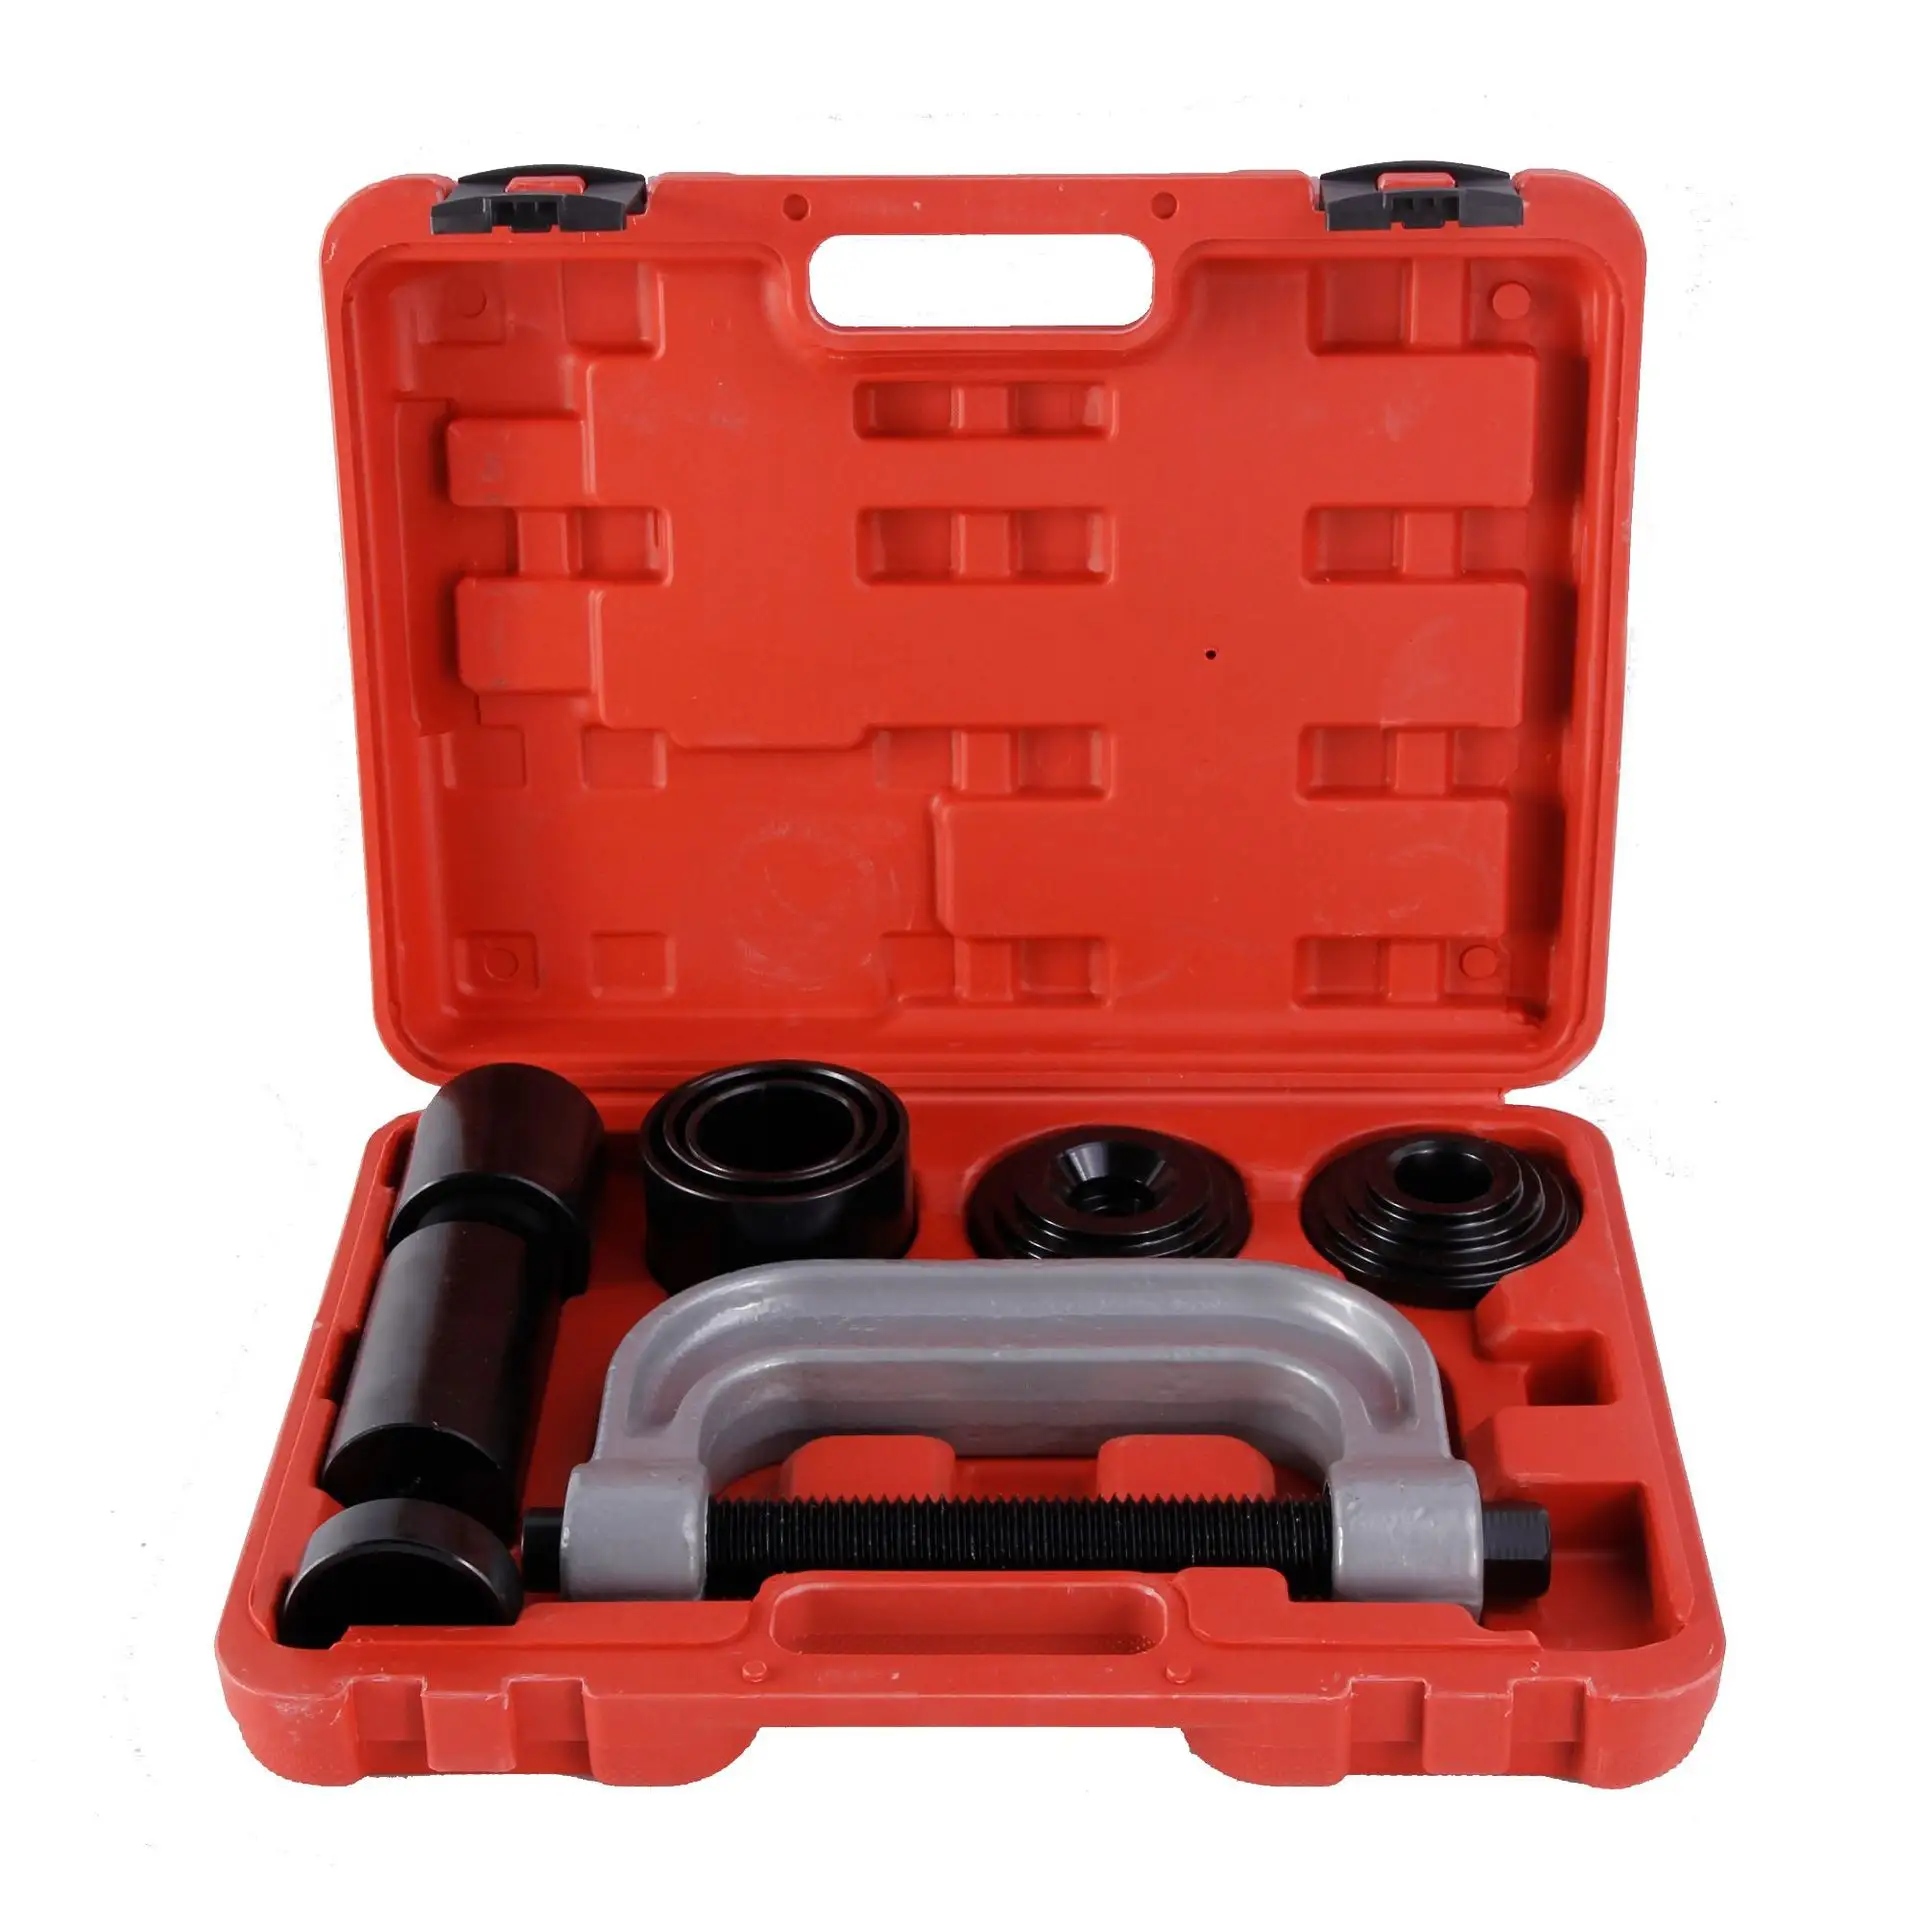 10 pezzi Heavy Duty Ball Joint Press & U Joint Removal Tool Kit con adattatori 4x4, per la maggior parte delle auto 2WD e 4WD e autocarri leggeri